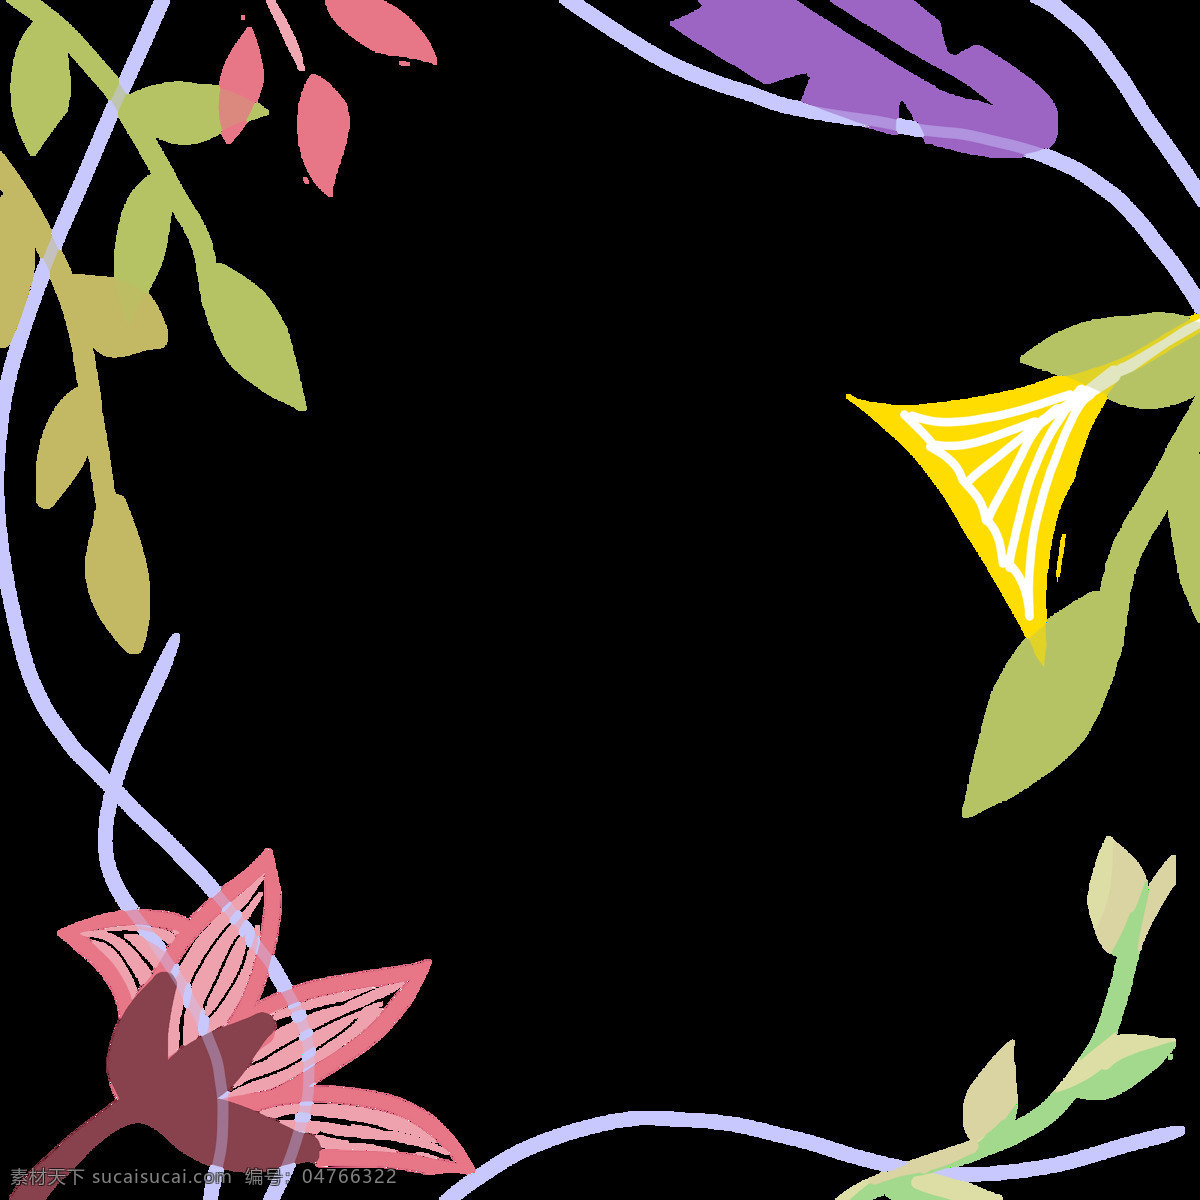 水彩 彩色 植物 背景 纹理 清新 底纹 脱俗 绿色 粉紫 黄色 多样 花朵 树叶 绿叶 条纹